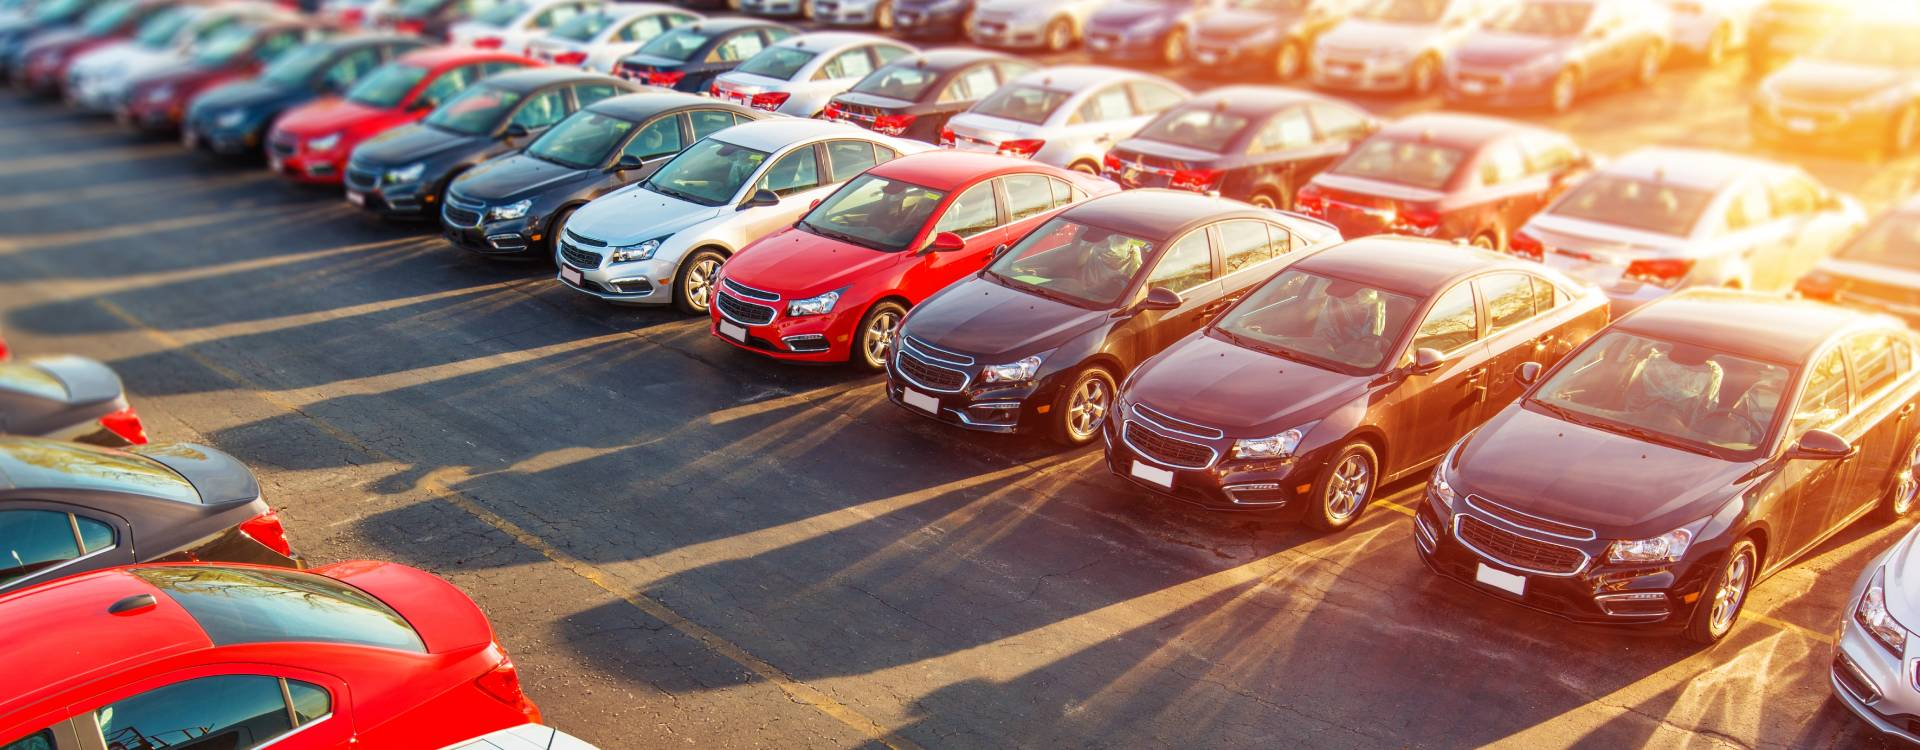 Ahórrate la inminente subida de precios de vehículos nuevos con el renting